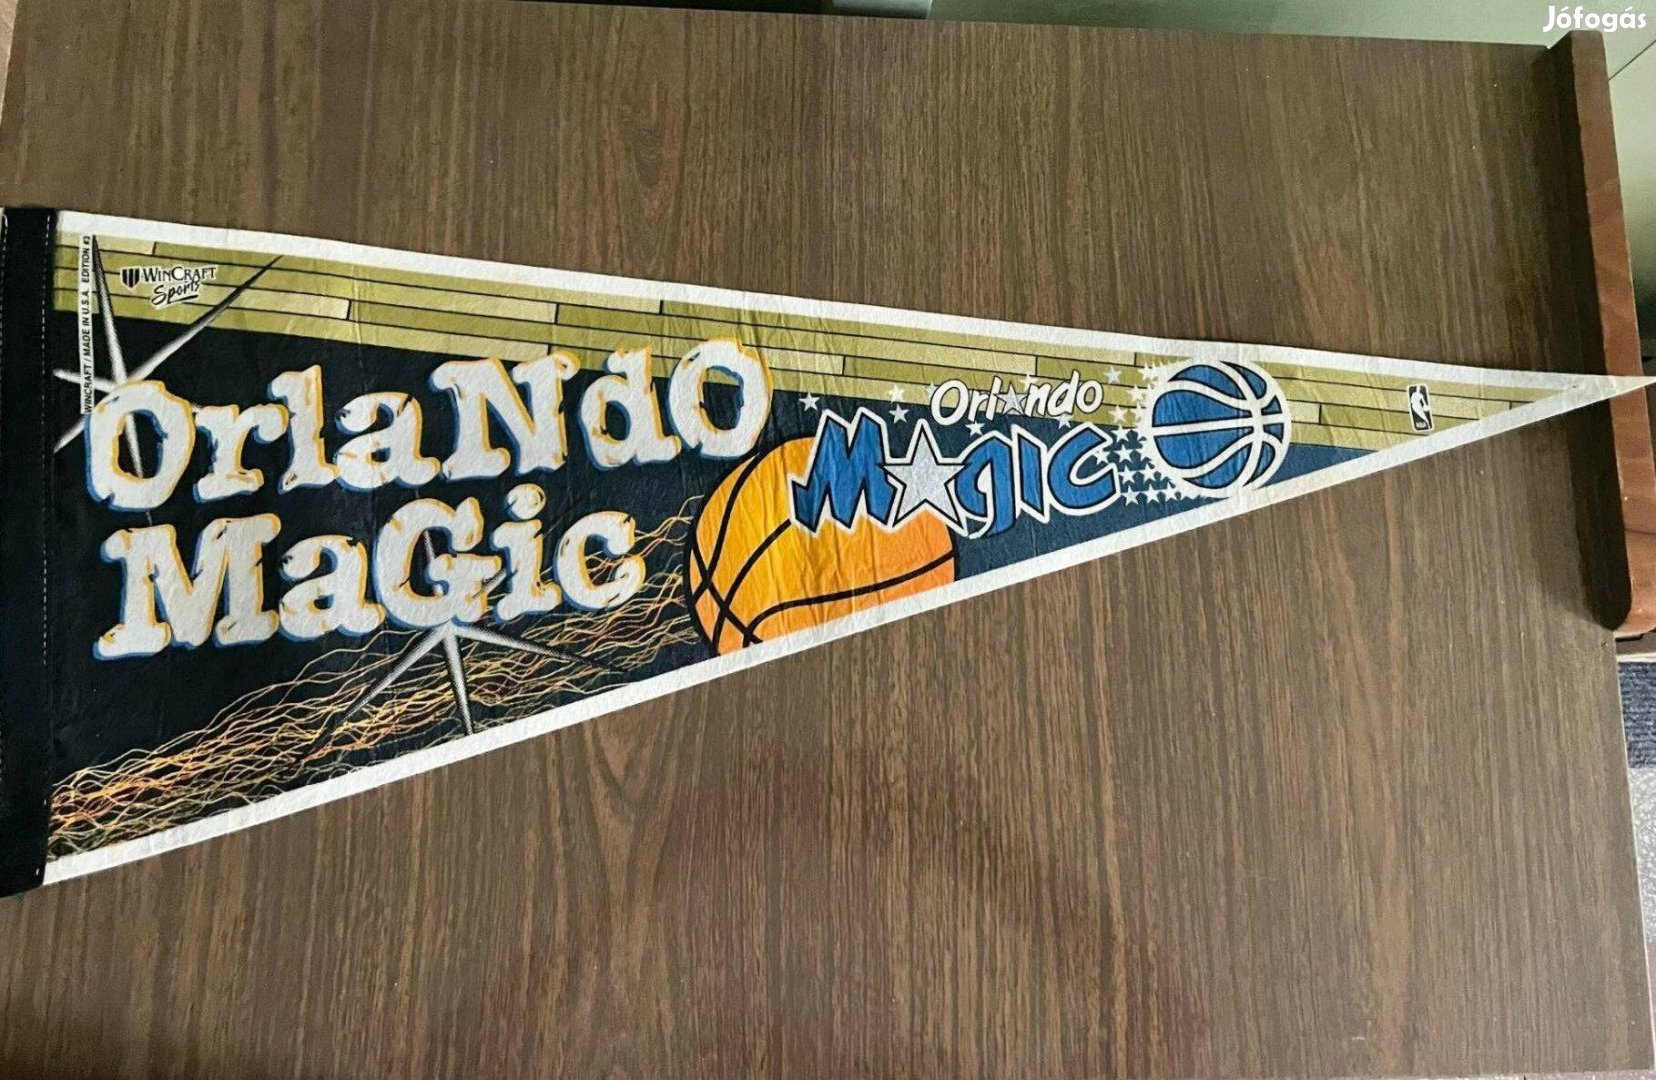 Orlando Magic (eredeti) NBA Vintage USA filc kosaras zászló hologramos